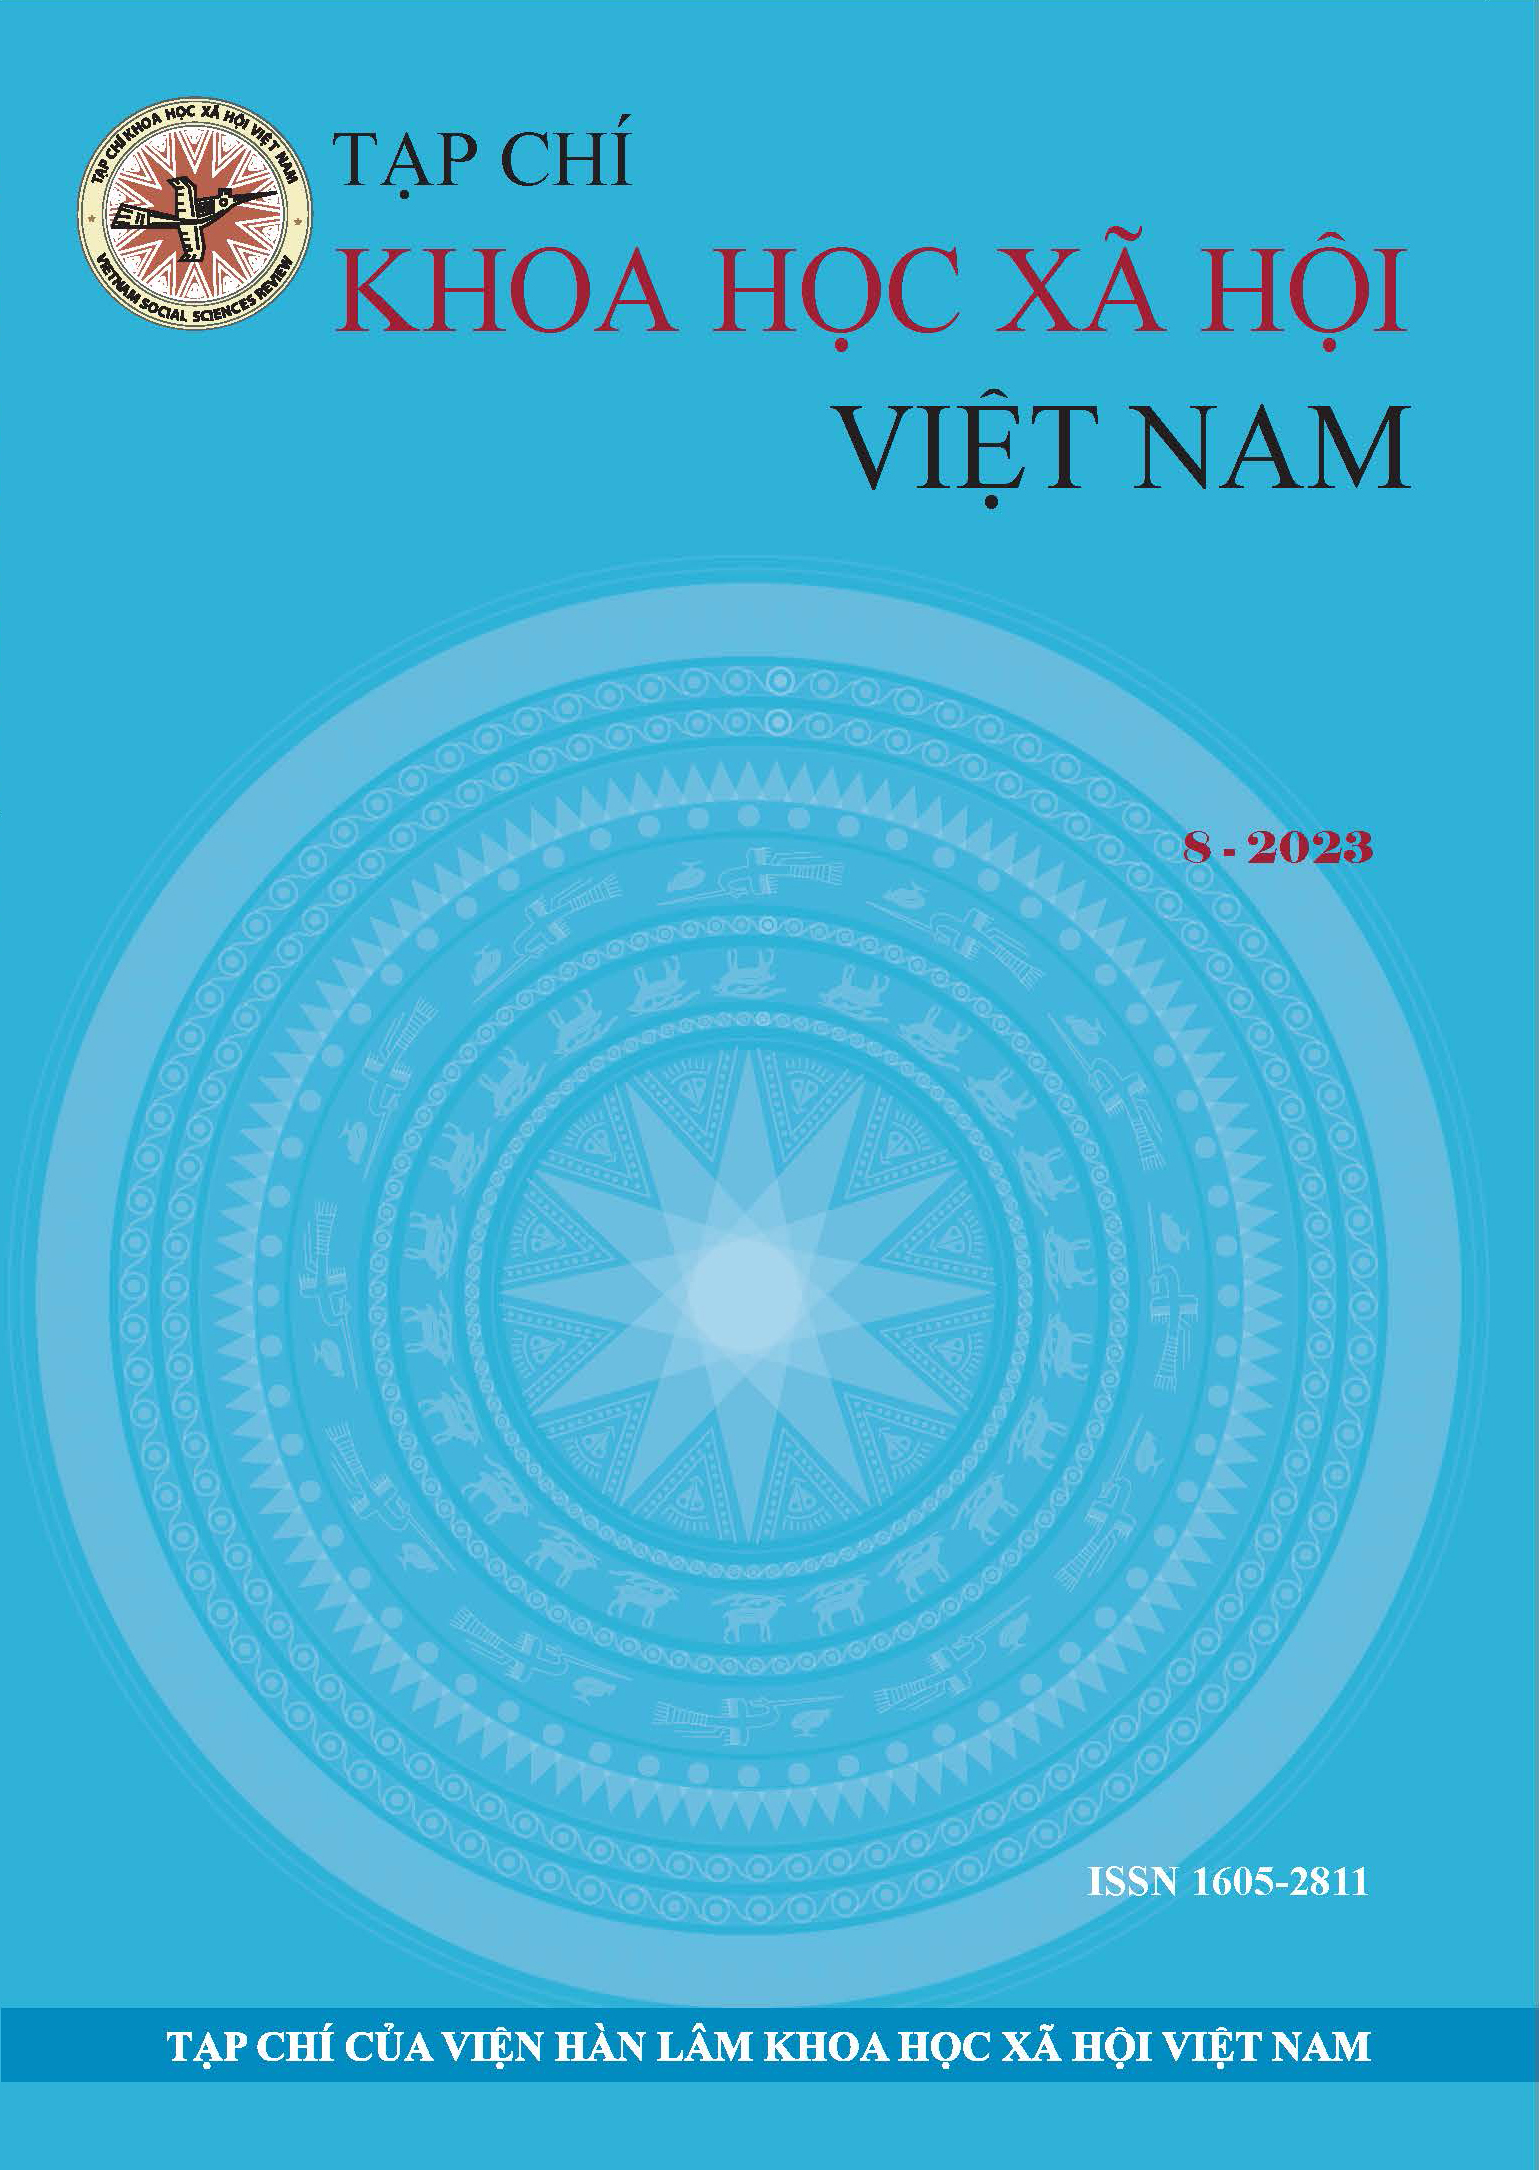 Tạp chí Khoa học xã hội Việt Nam. Số 8 - 2023 